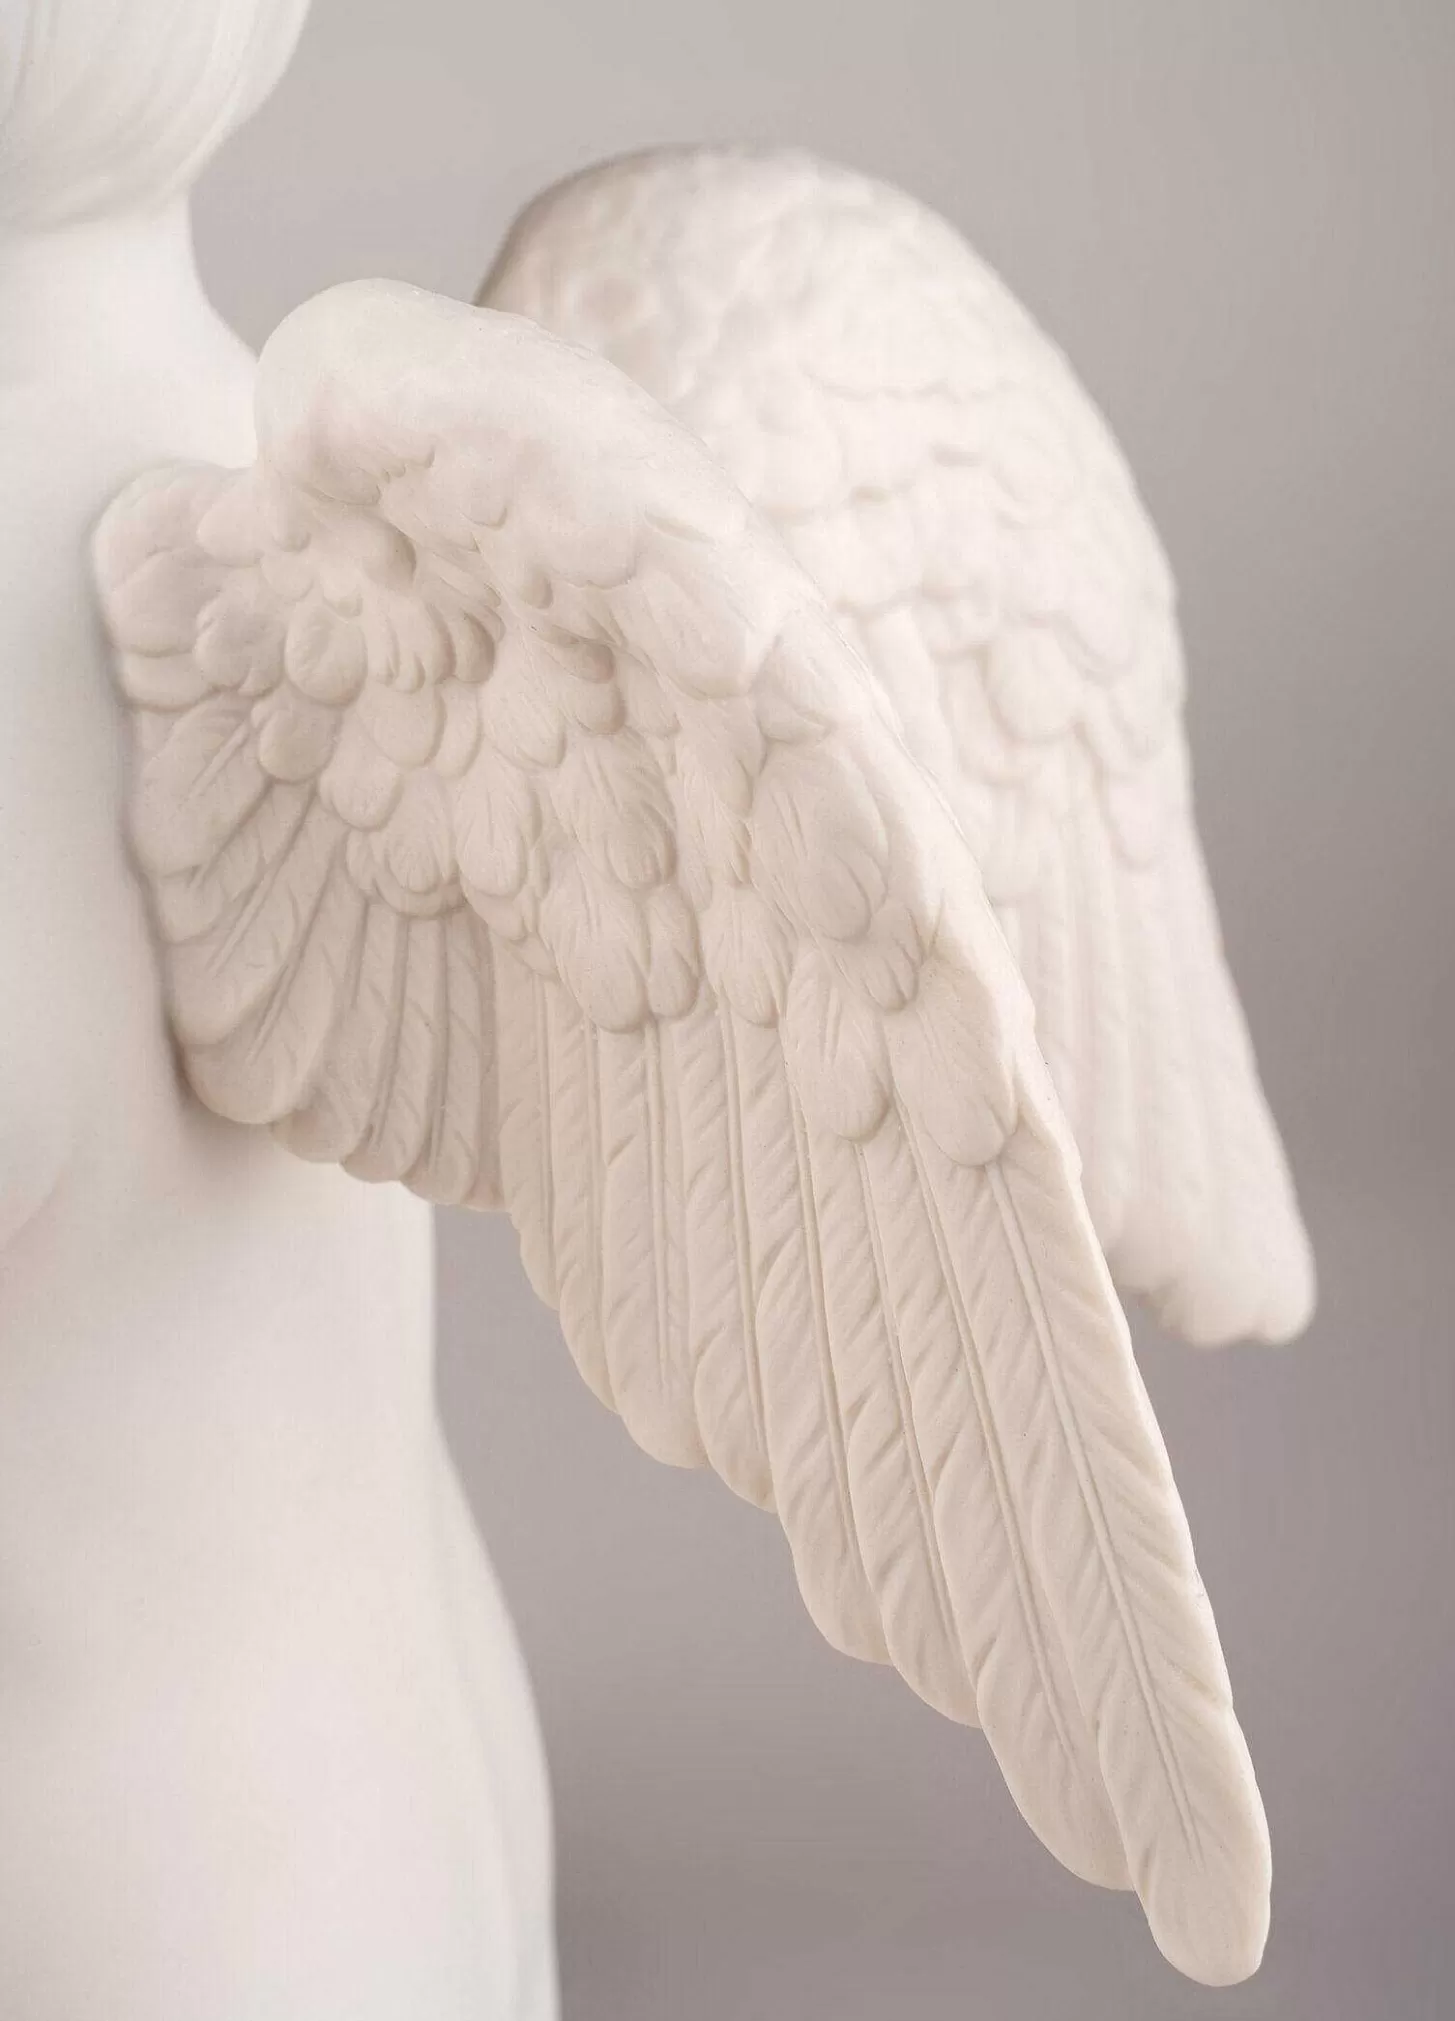 Lladró Celestial Angel Figurine^ Heritage